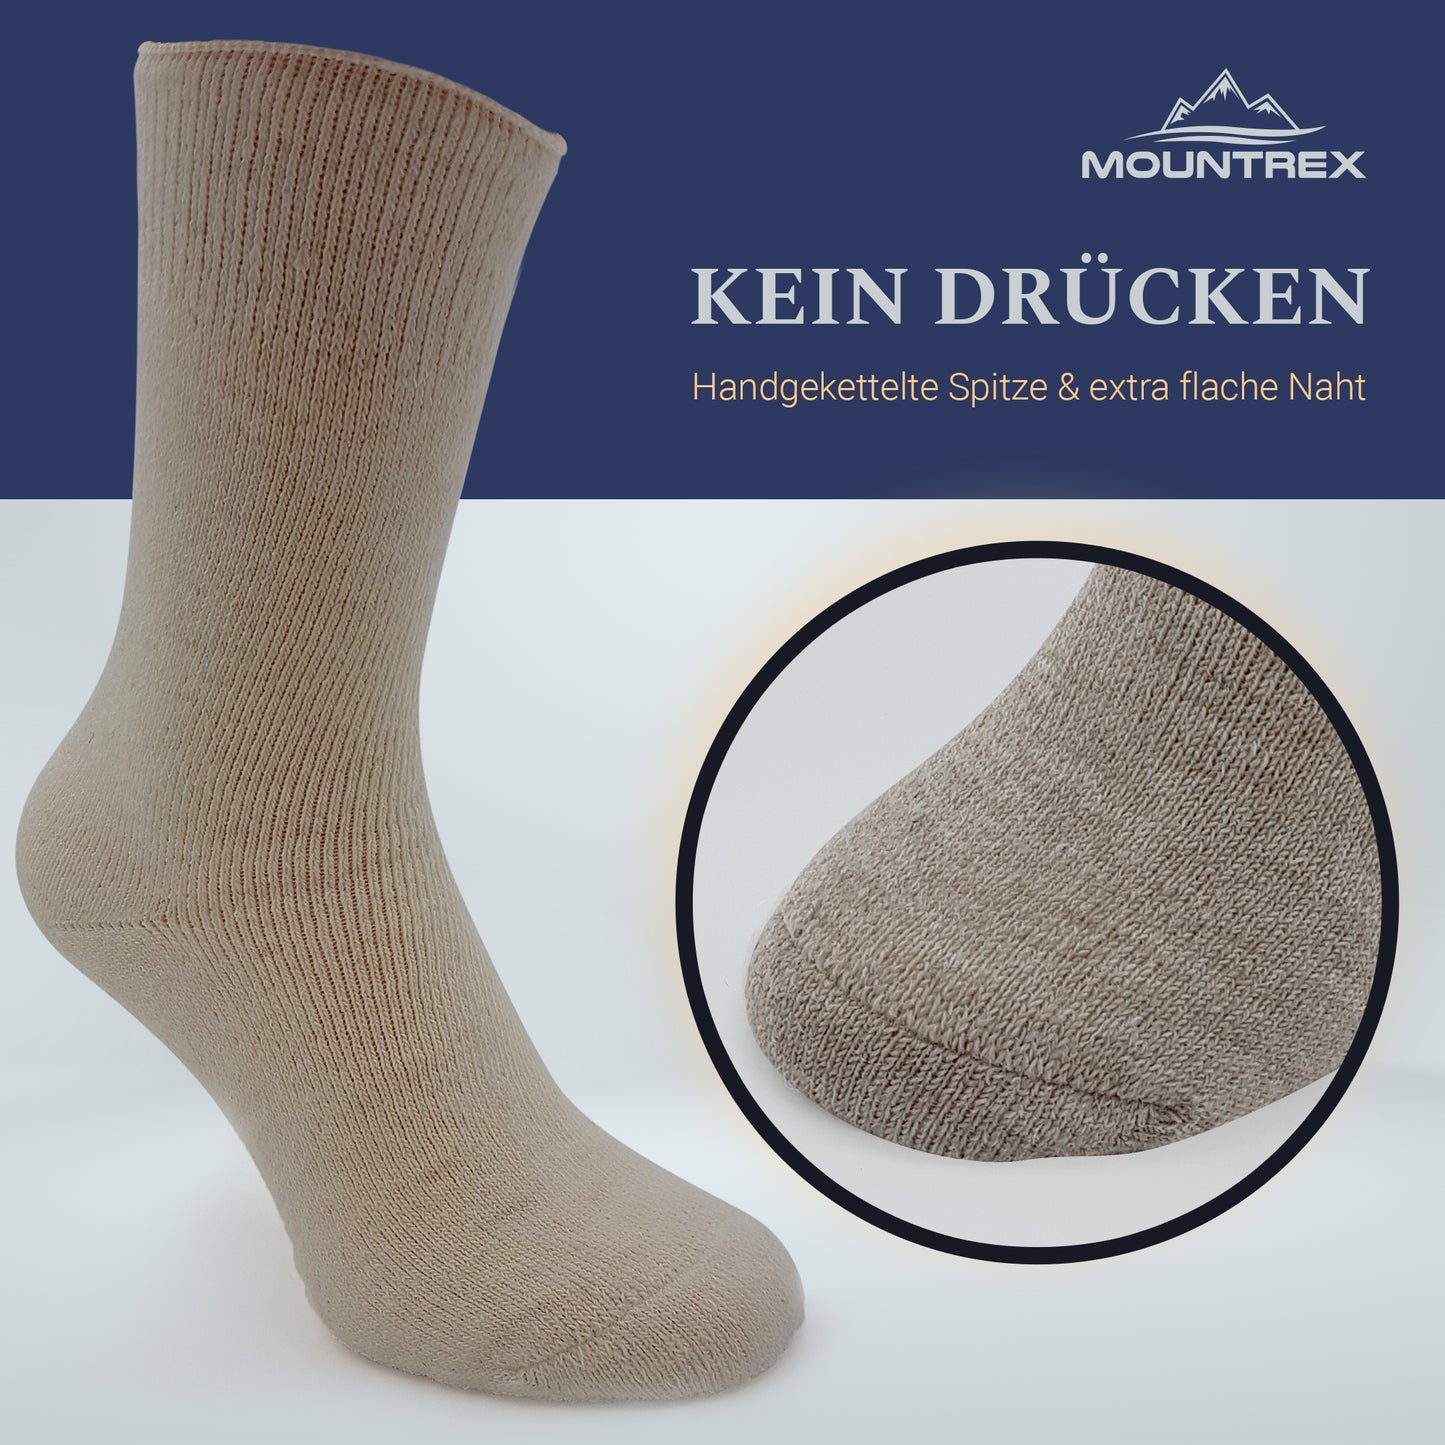 Alpaka Socken, Wollsocken (2 Paar) - Dick Thermo (Beige/Braun)